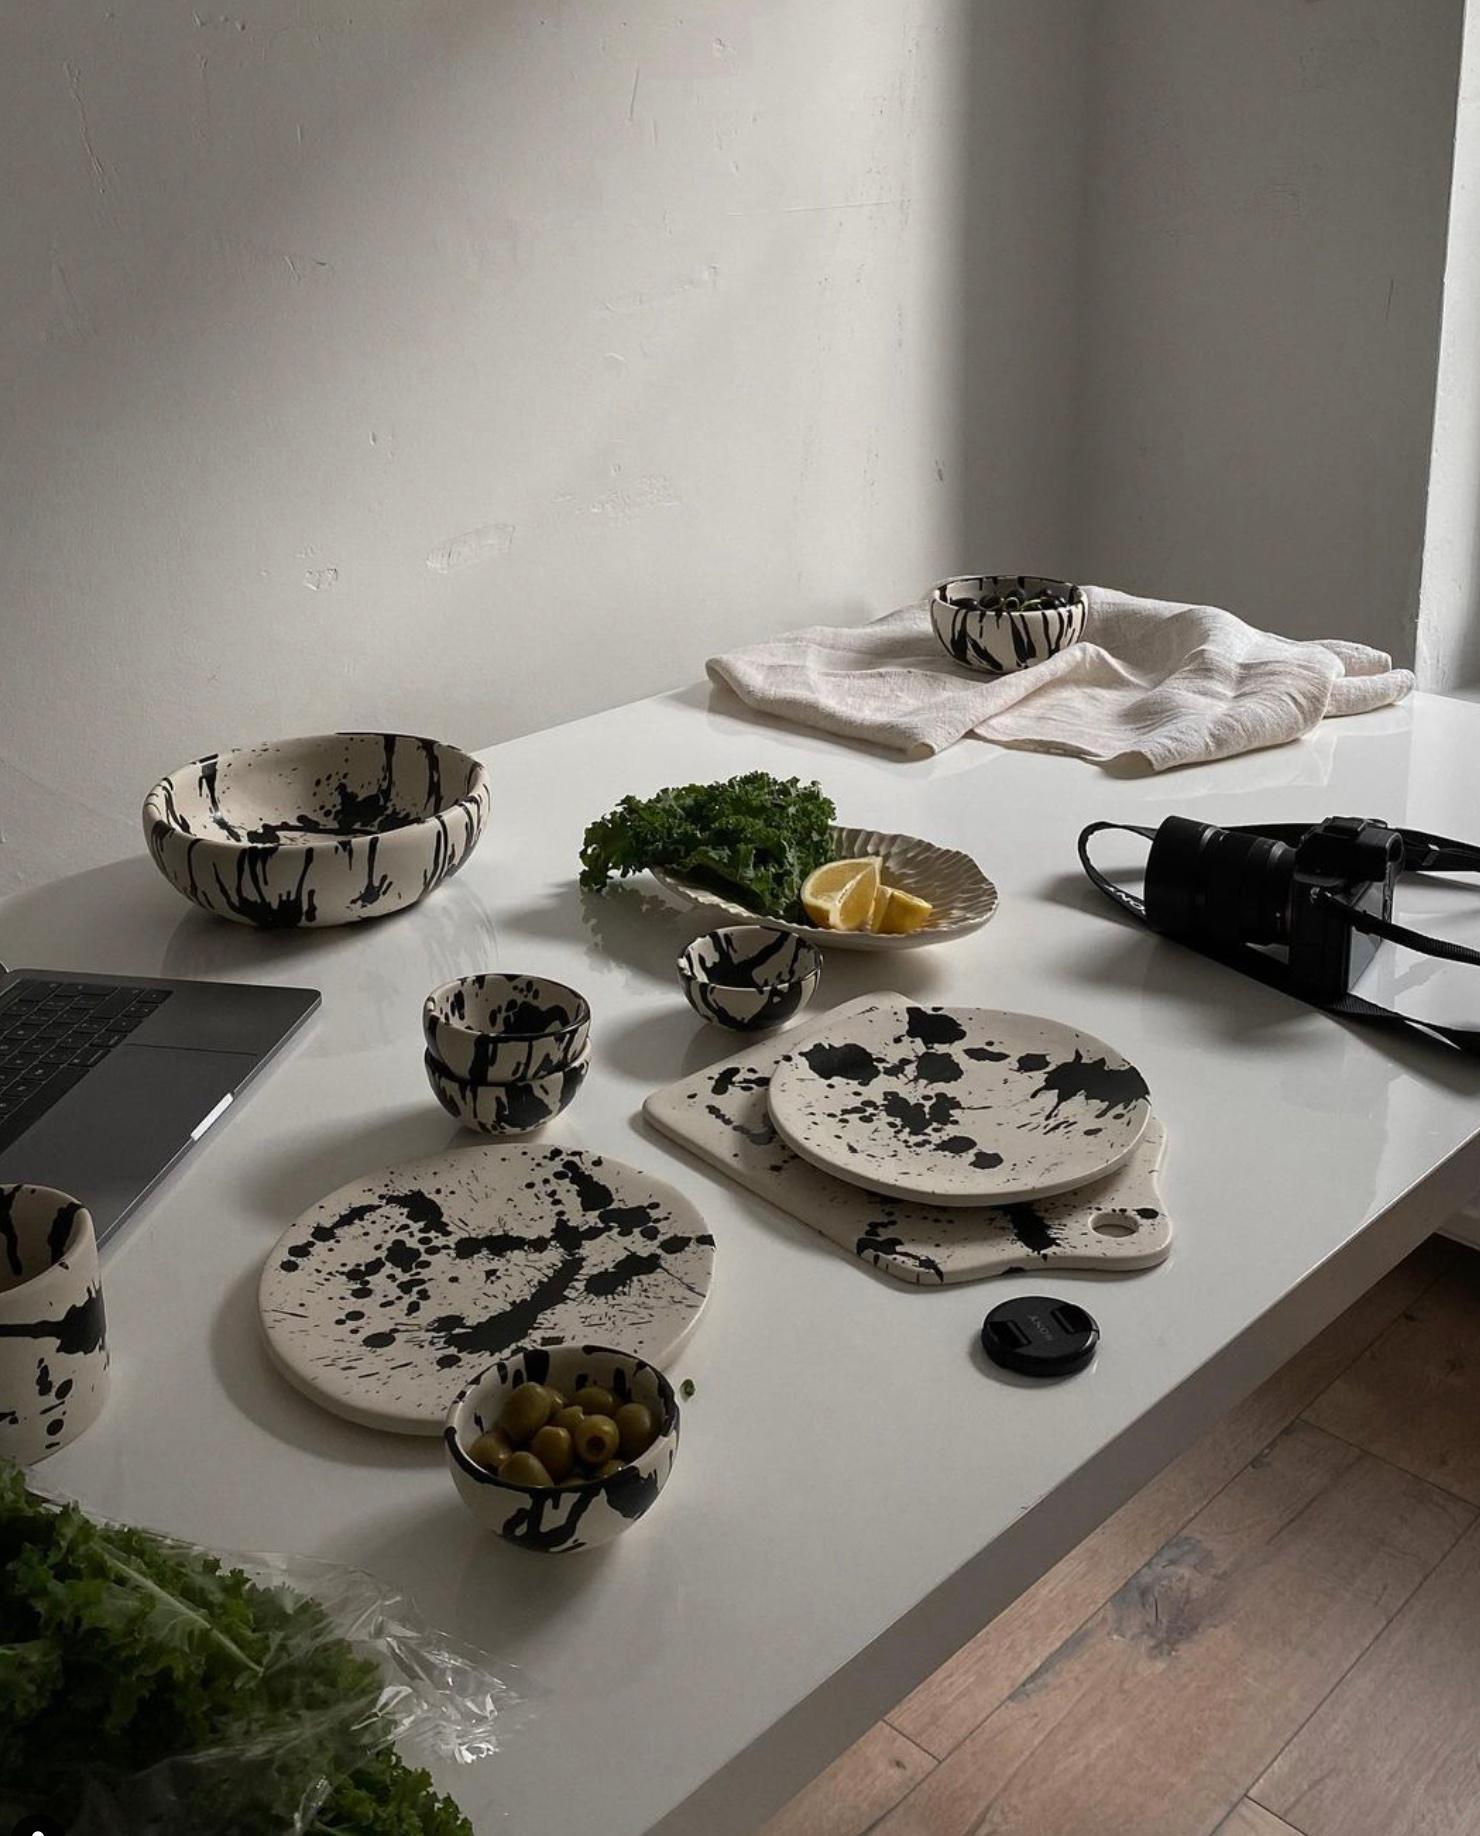 Argentine Rock Handmade Ceramic Dipping Bowls - Set of 4 - Black & White Splatterware For Sale